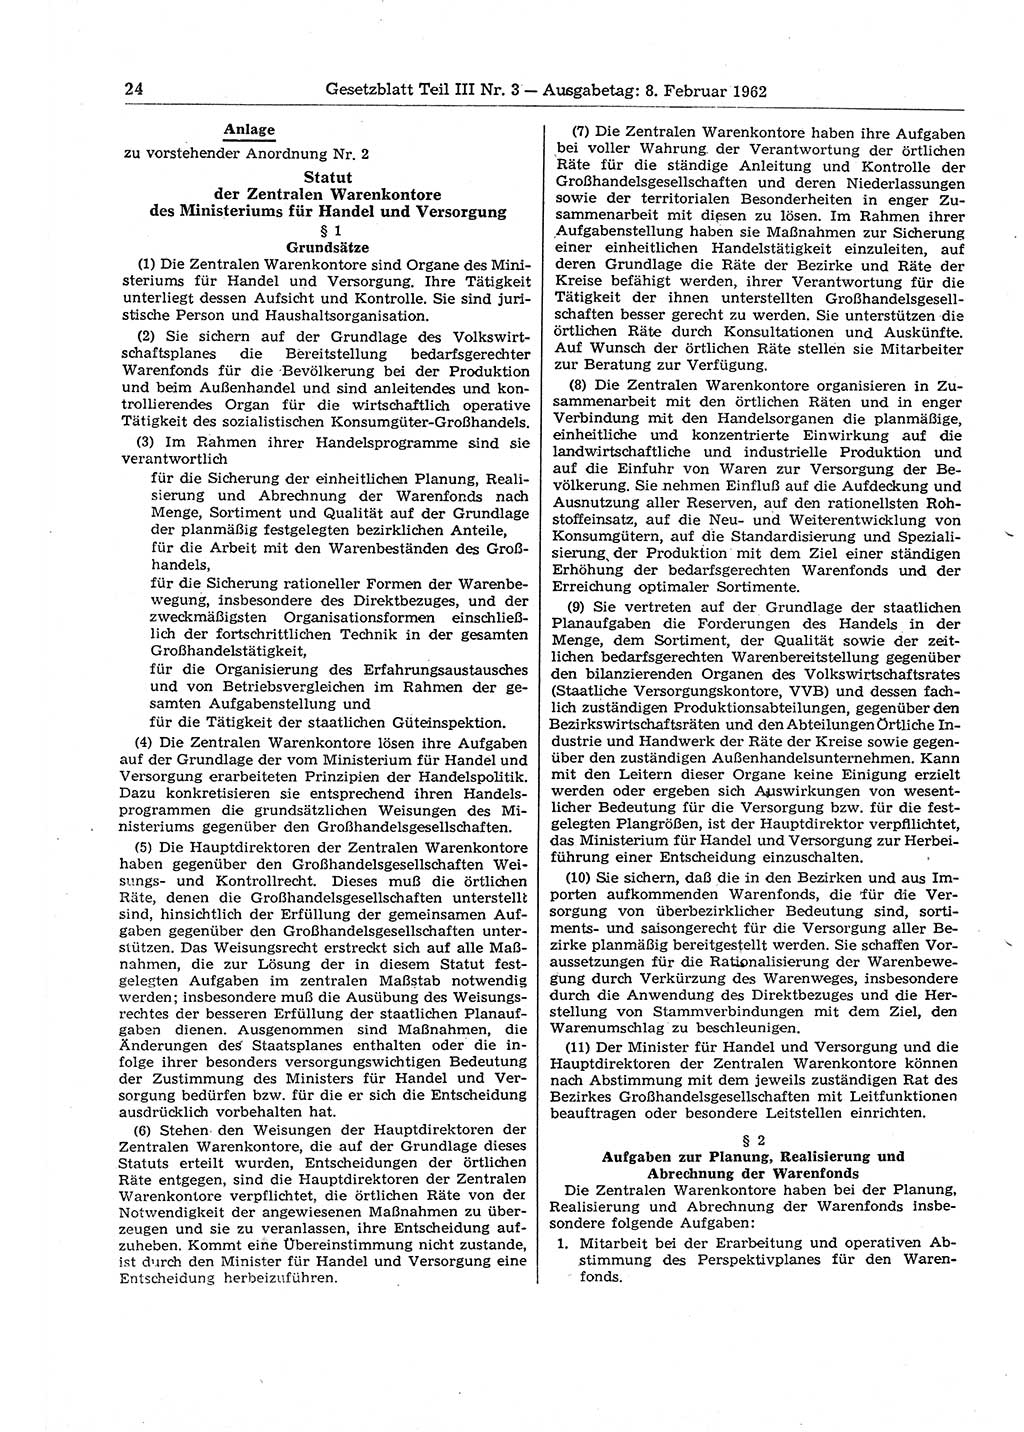 Gesetzblatt (GBl.) der Deutschen Demokratischen Republik (DDR) Teil ⅠⅠⅠ 1962, Seite 24 (GBl. DDR ⅠⅠⅠ 1962, S. 24)